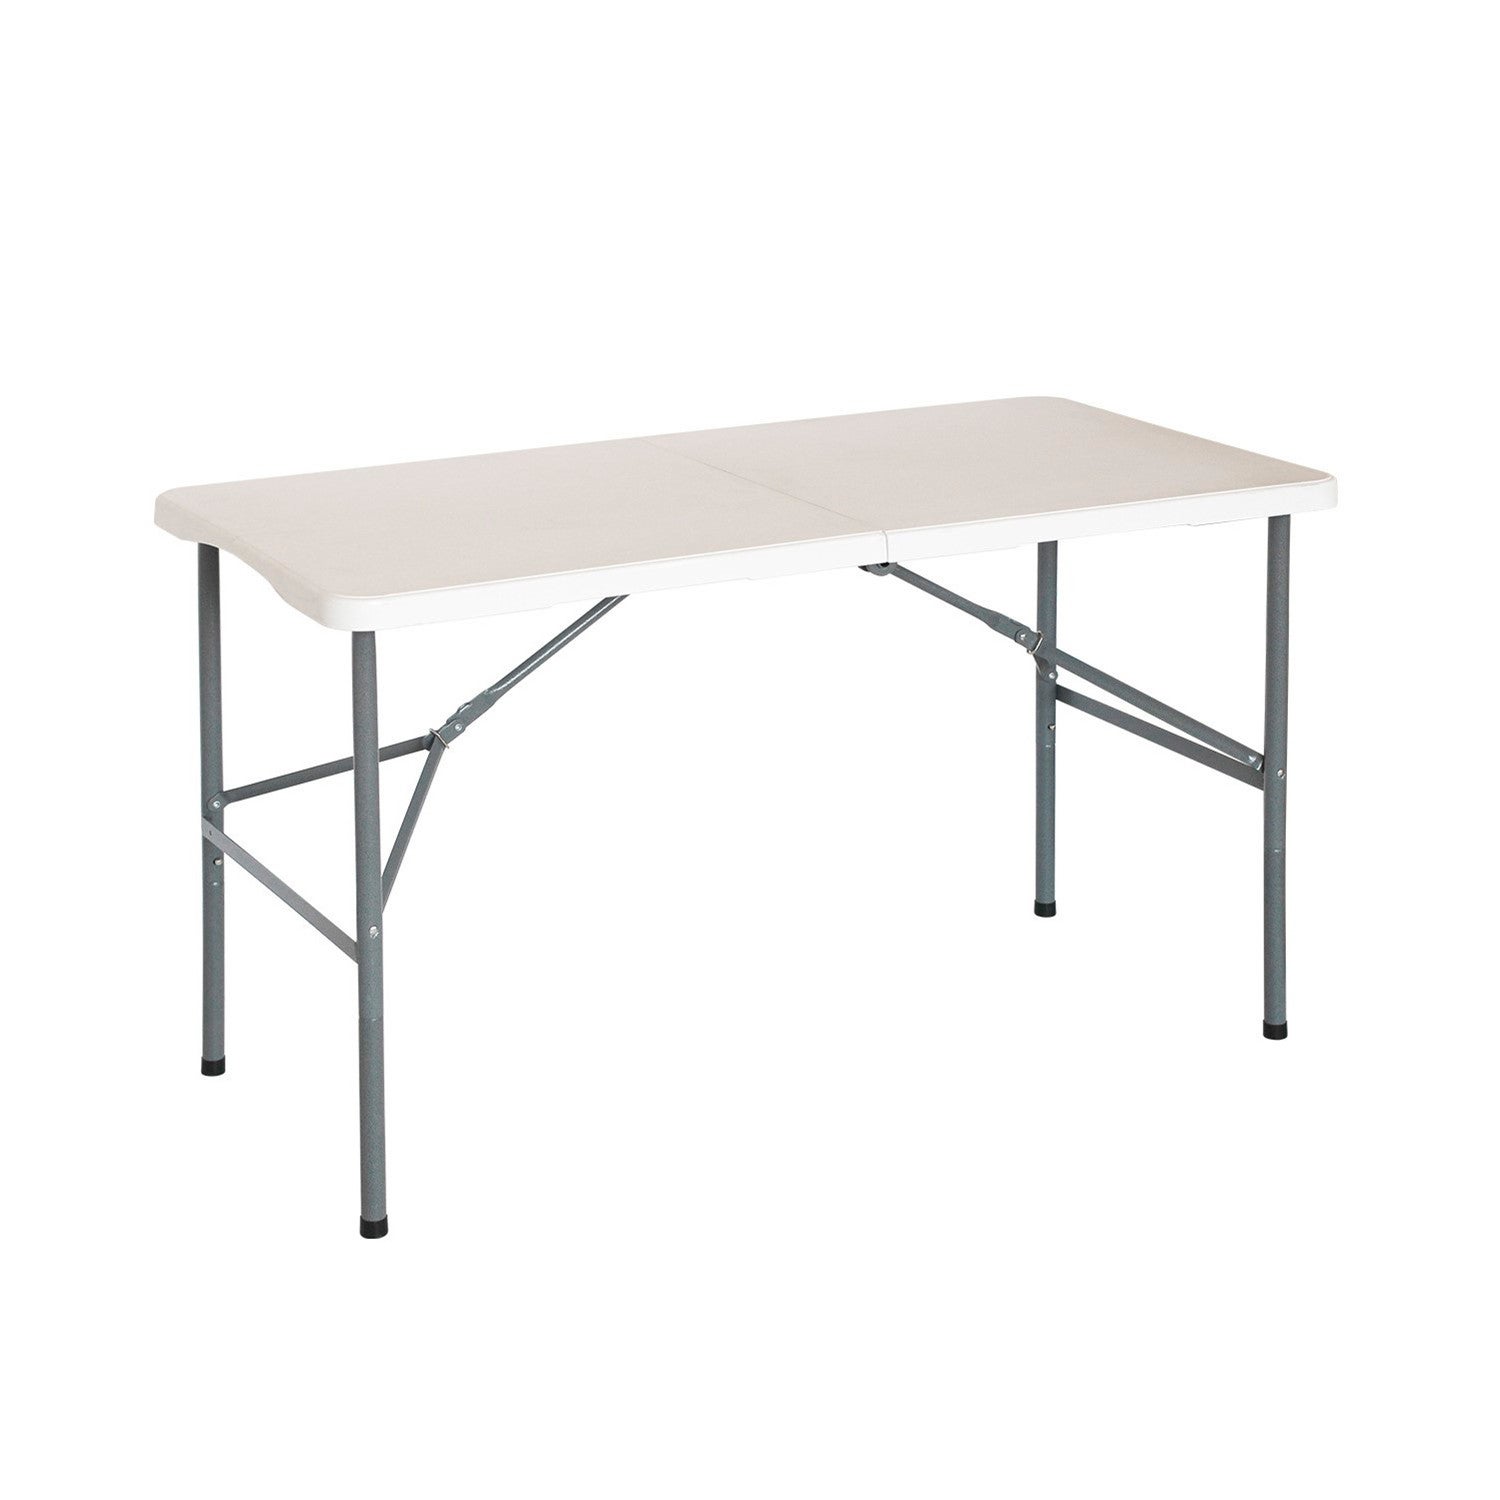 TIENDA EURASIA - Table Pliante Portable, Blanche en Plastique Résistant,  pour Intérieur ou Extérieur, 79x56x64 cm